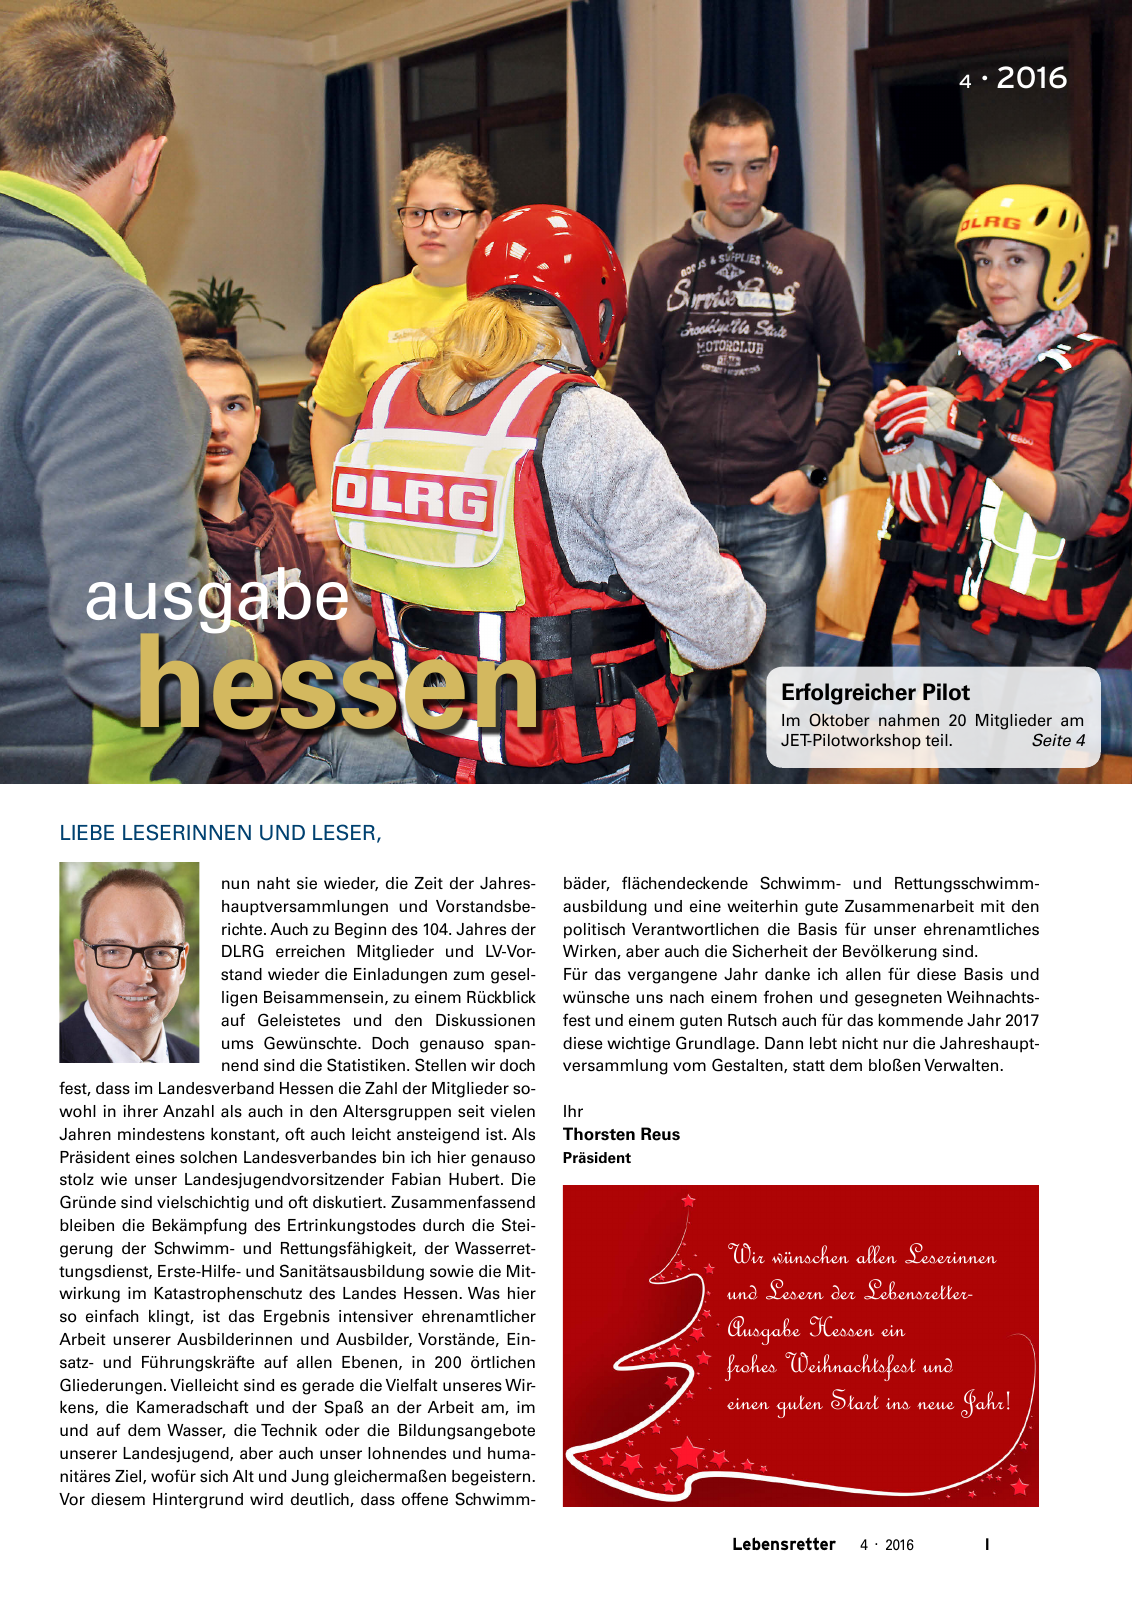 Vorschau Lebensretter 4/2016 - Regionalausgabe Hessen Seite 3